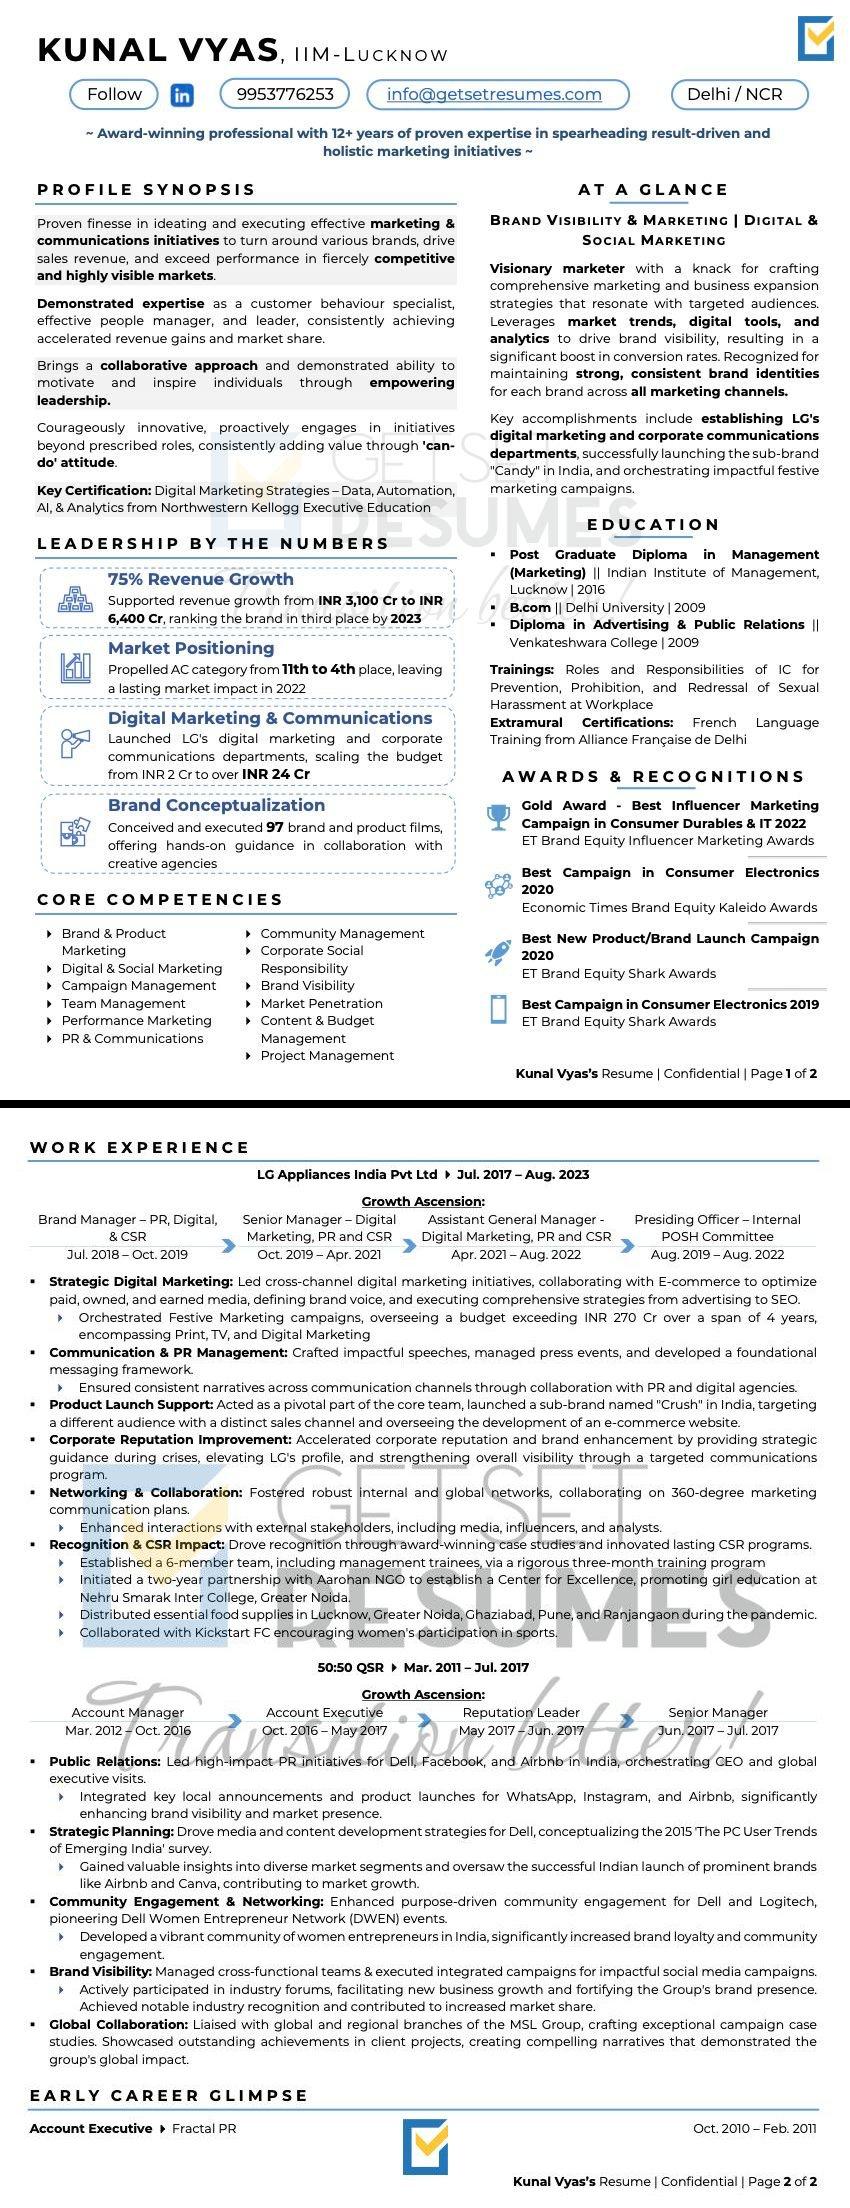 Sample Resume of GM - Branding & Senior Marketing Officer by GetSetResumes